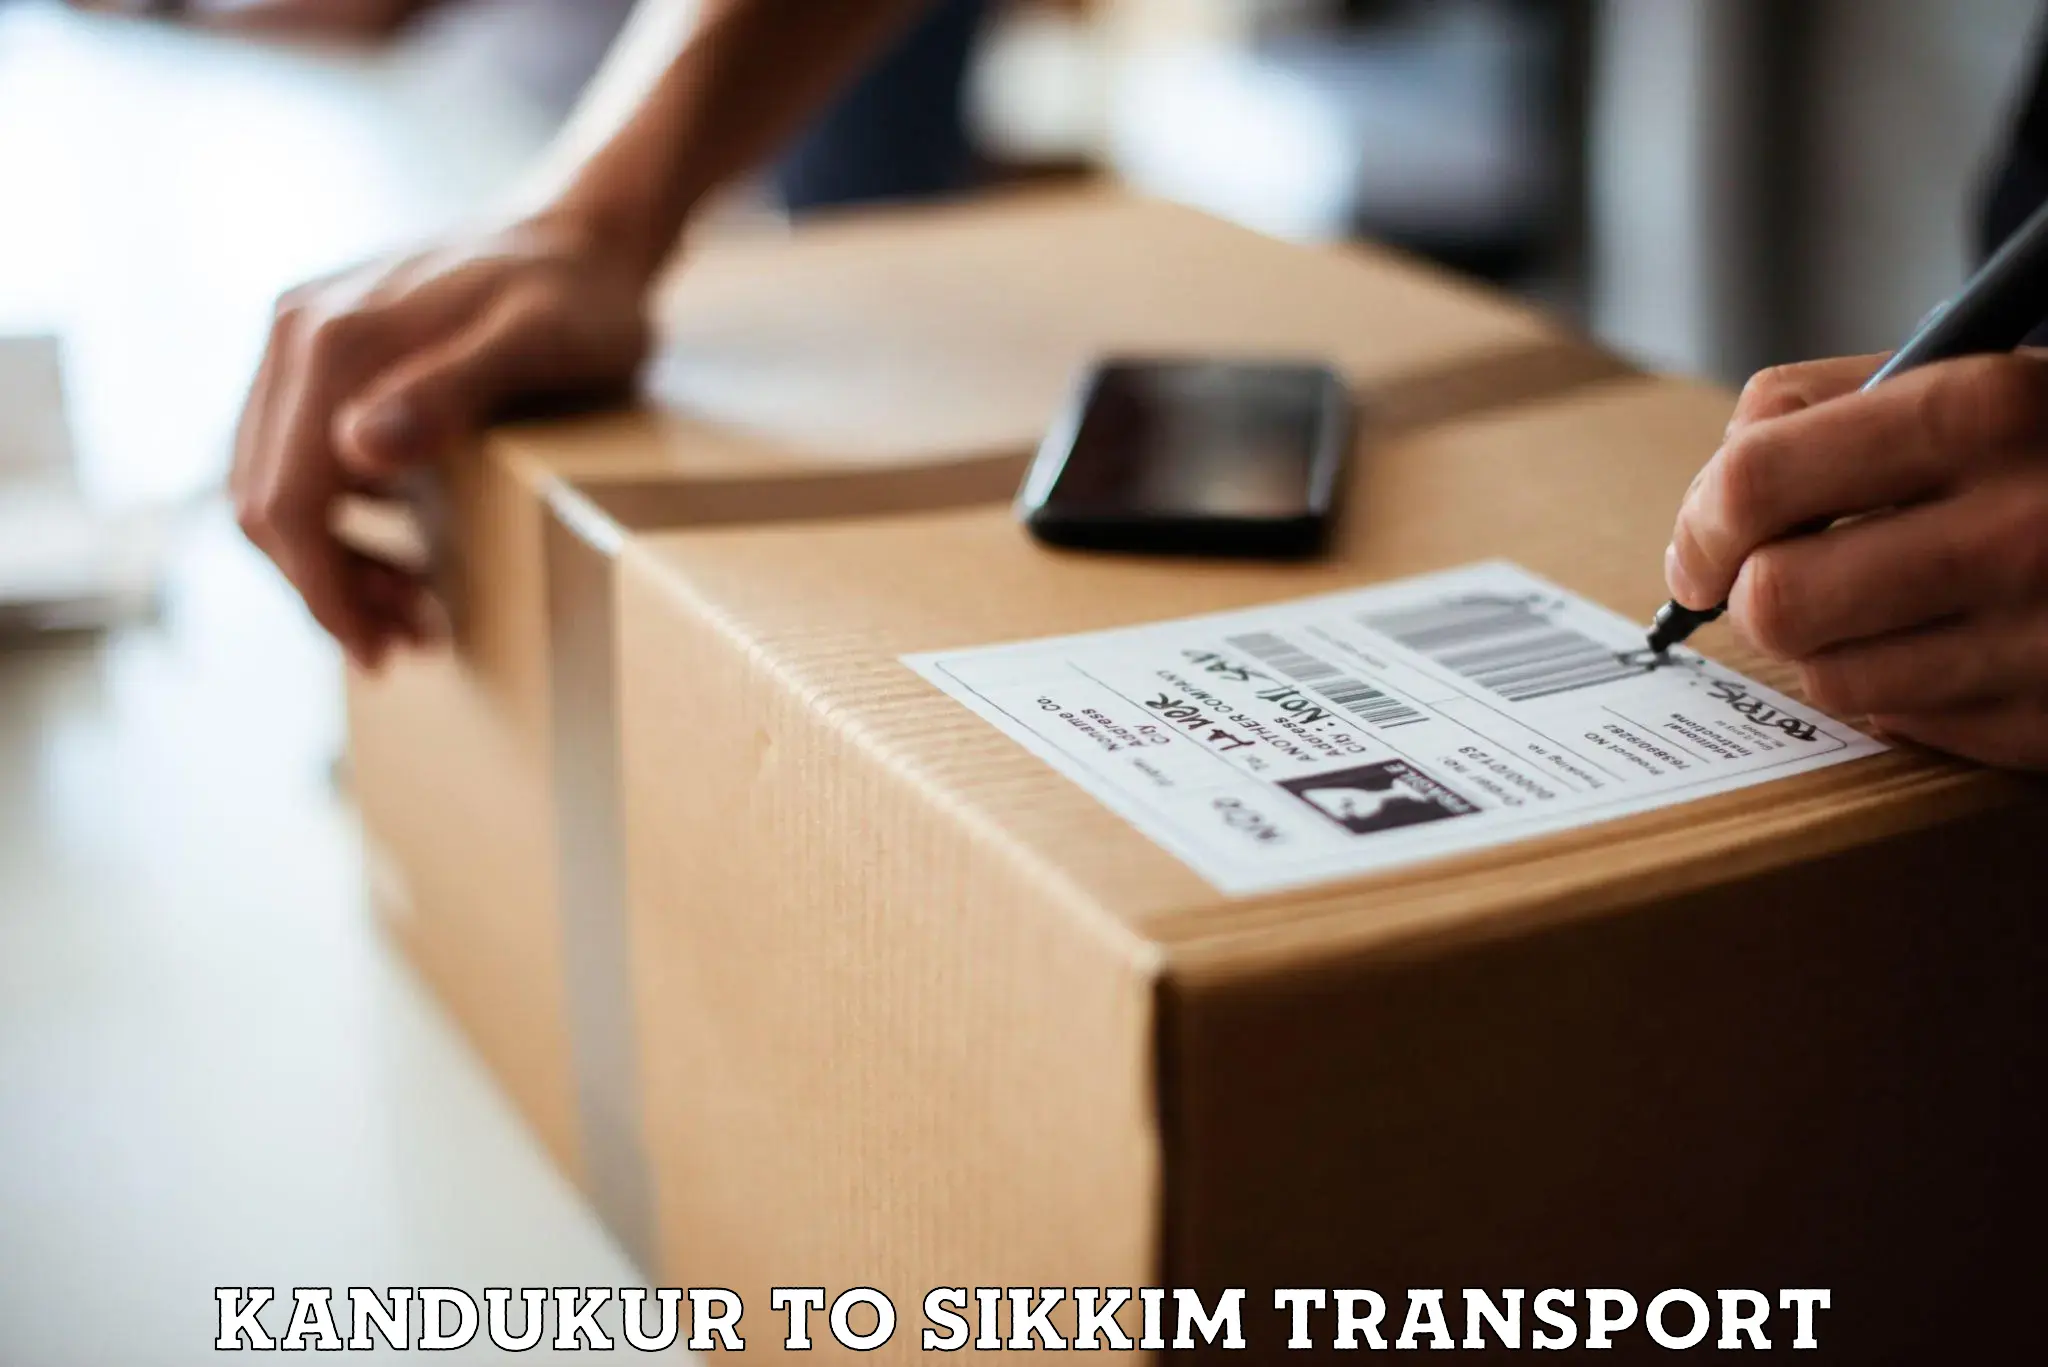 Logistics transportation services Kandukur to NIT Sikkim